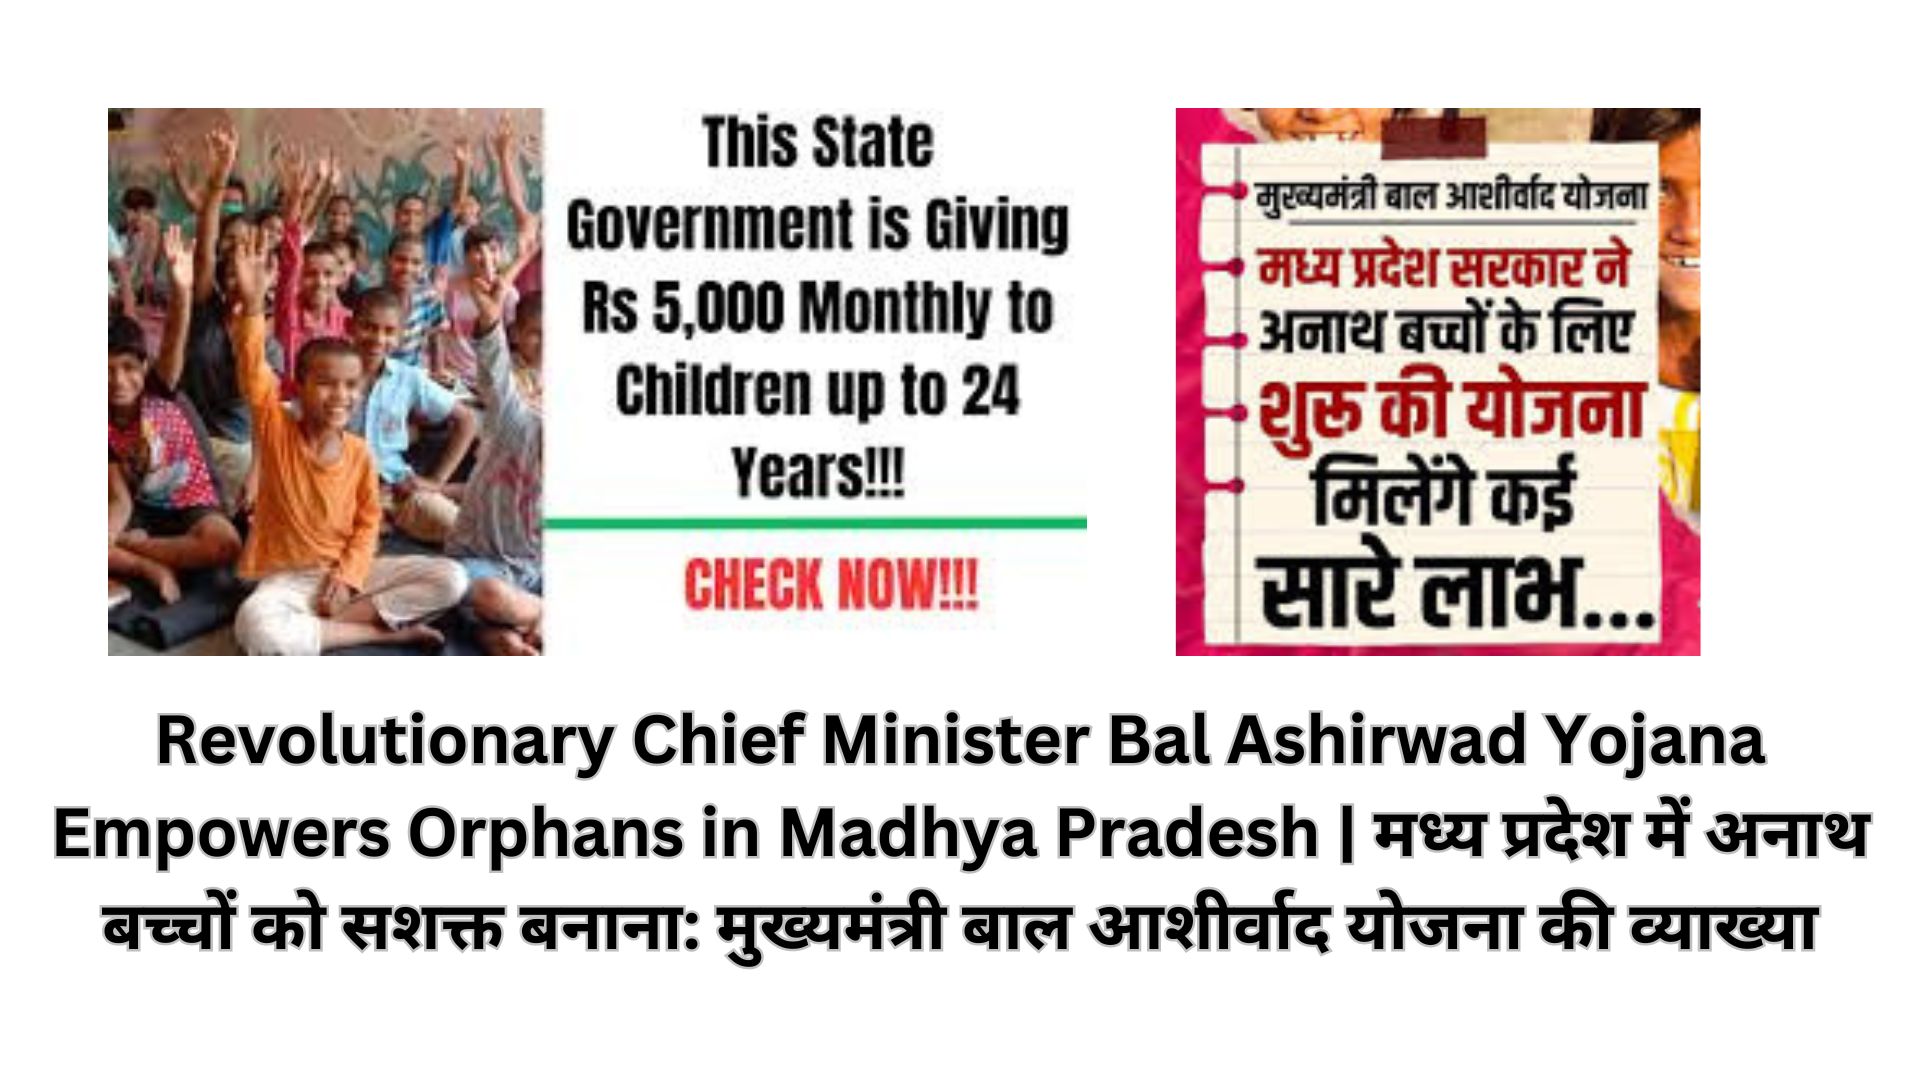 Revolutionary Chief Minister Bal Ashirwad Yojana Empowers Orphans in Madhya Pradesh | मध्य प्रदेश में अनाथ बच्चों को सशक्त बनाना: मुख्यमंत्री बाल आशीर्वाद योजना की व्याख्या